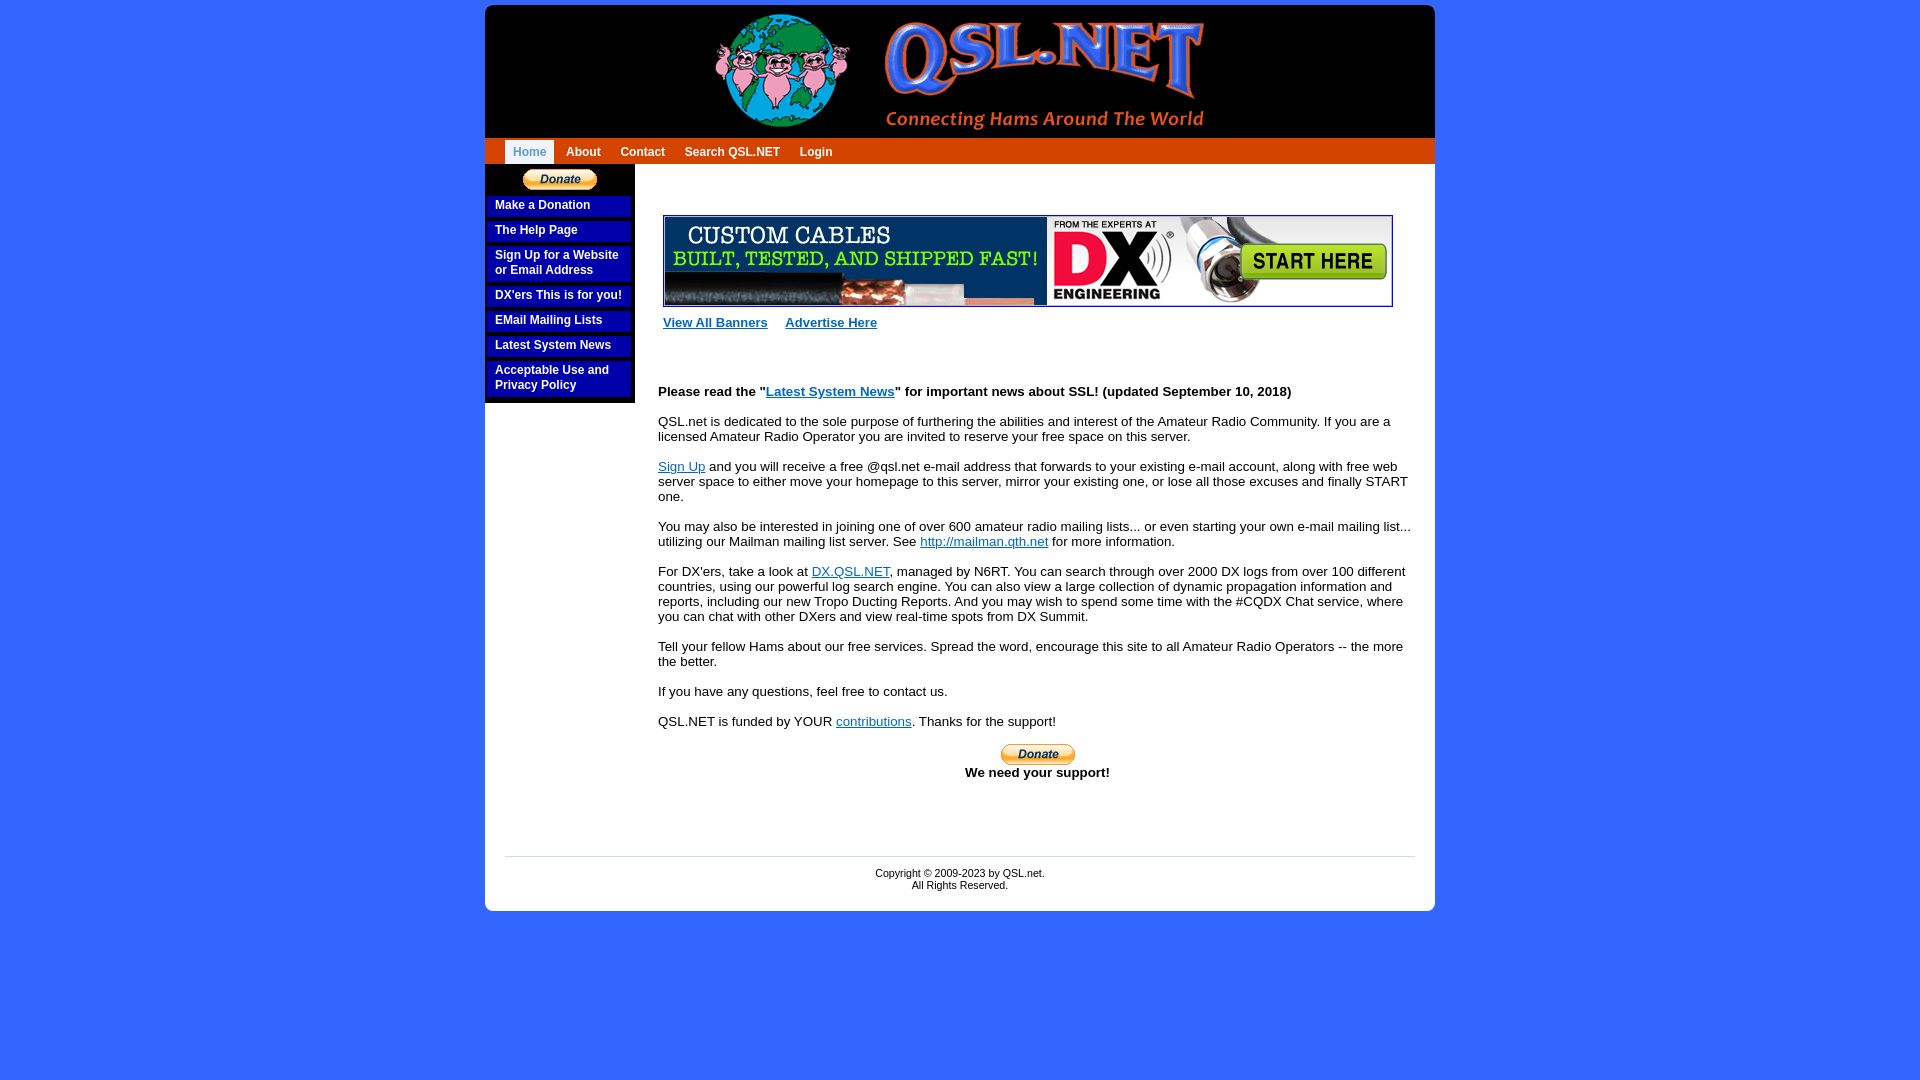 Website status qsl.net is   ONLINE